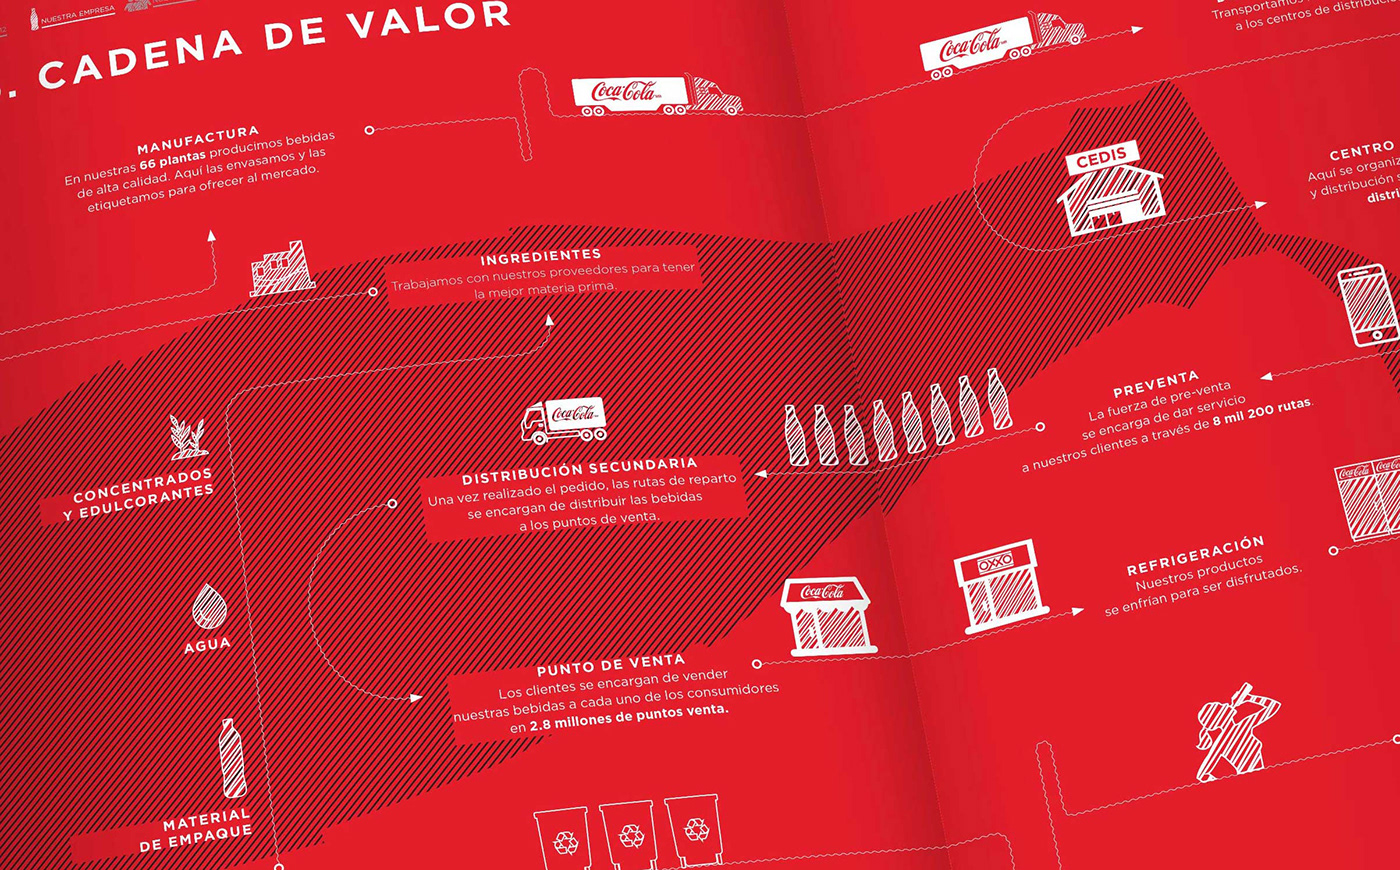 annual report Femsa Coca-Cola Sustainability sustentabilidad motion graphic